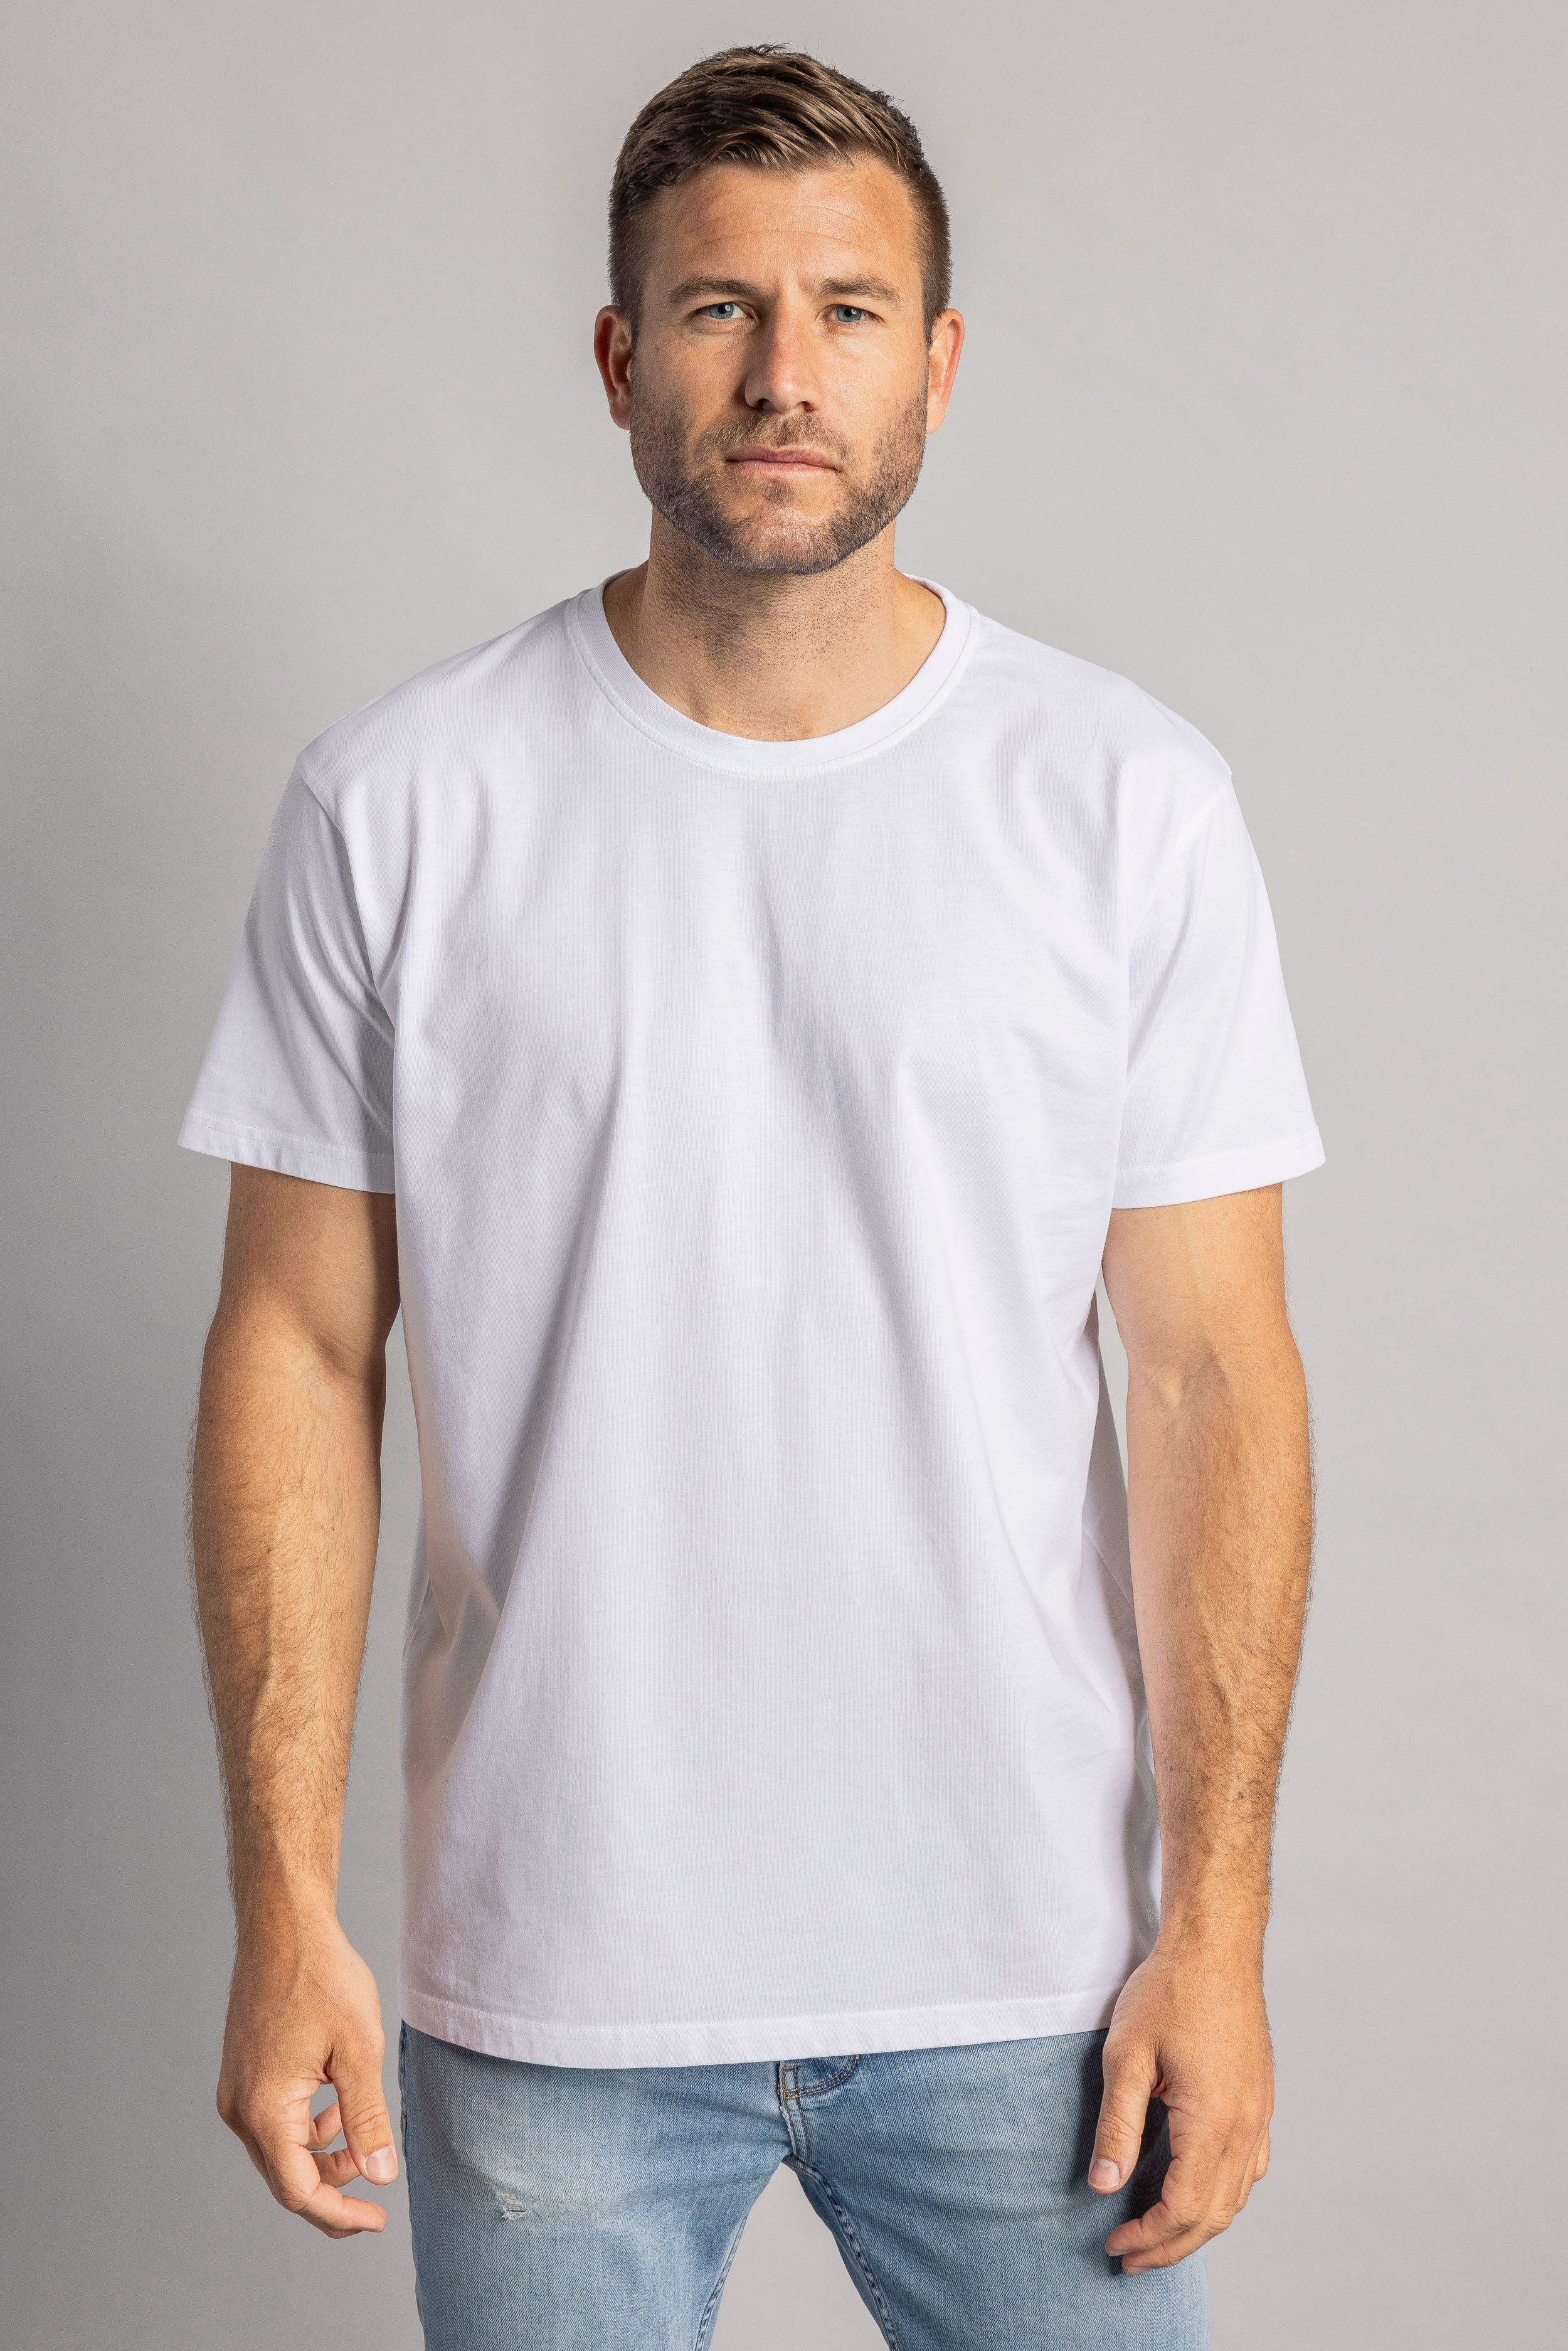 T-shirt blanc Premium Blank Standard en coton 100% biologique de DIRTS